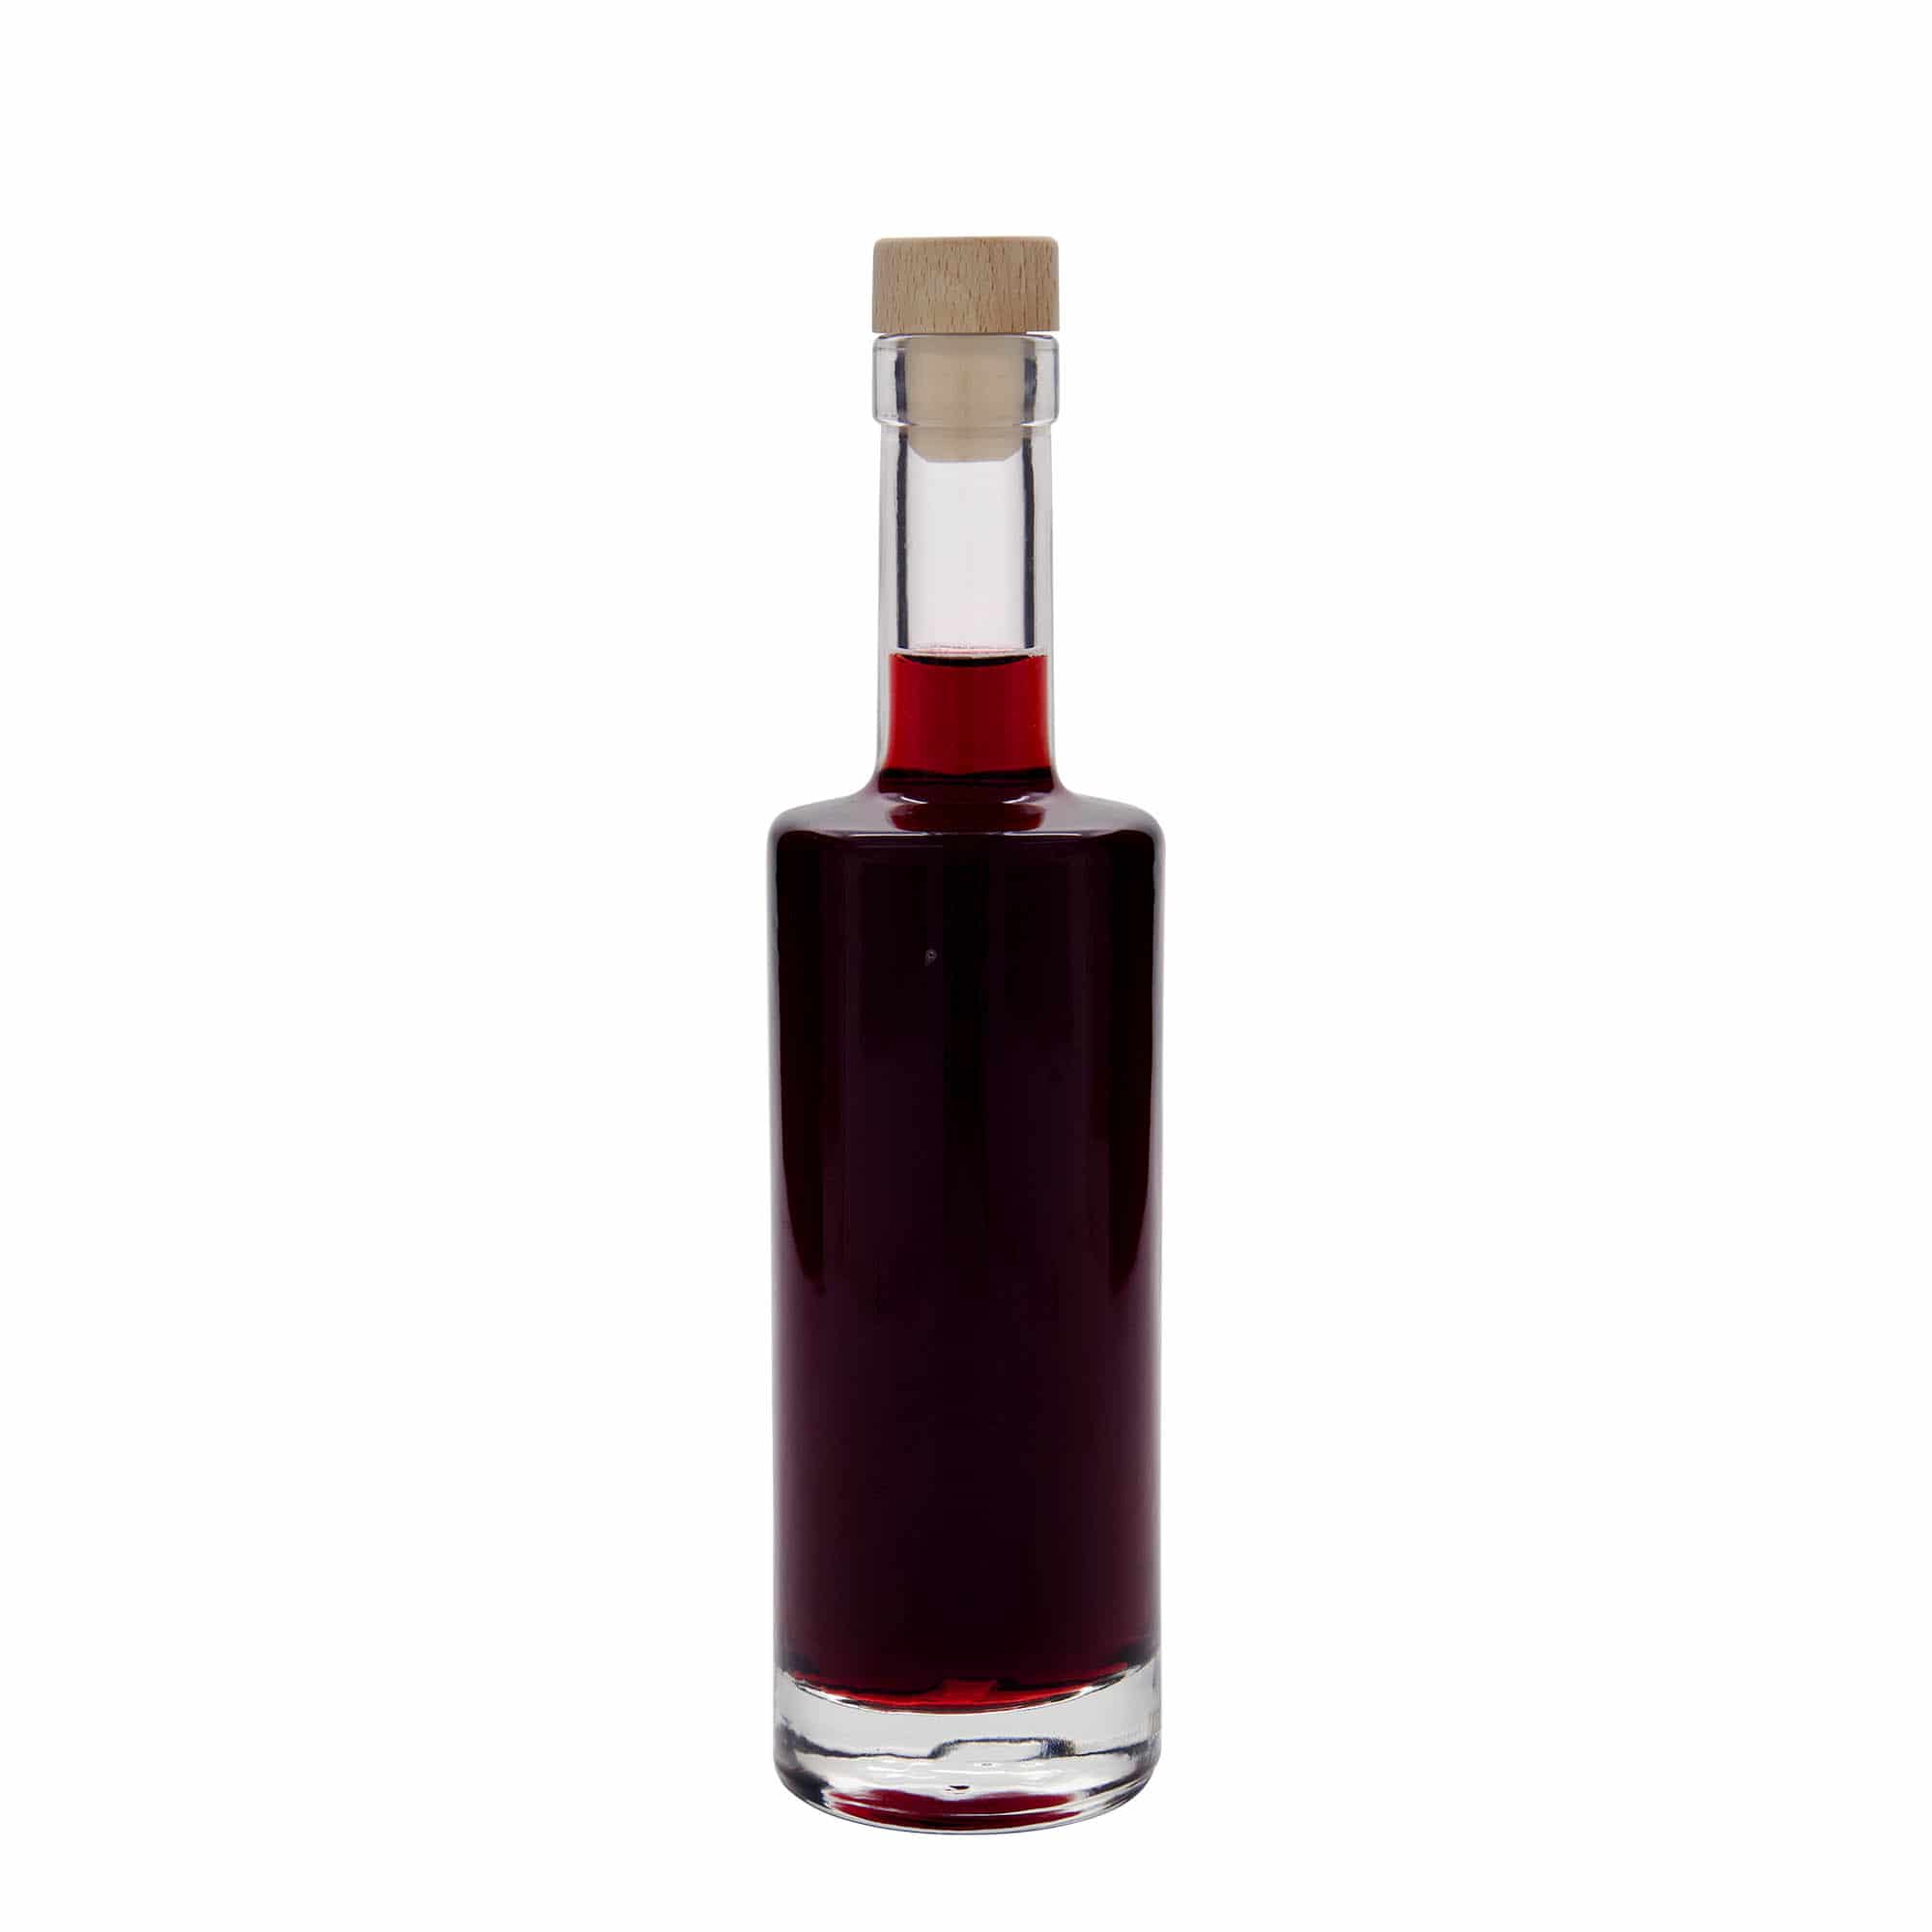 350 ml glass bottle 'Centurio', closure: cork